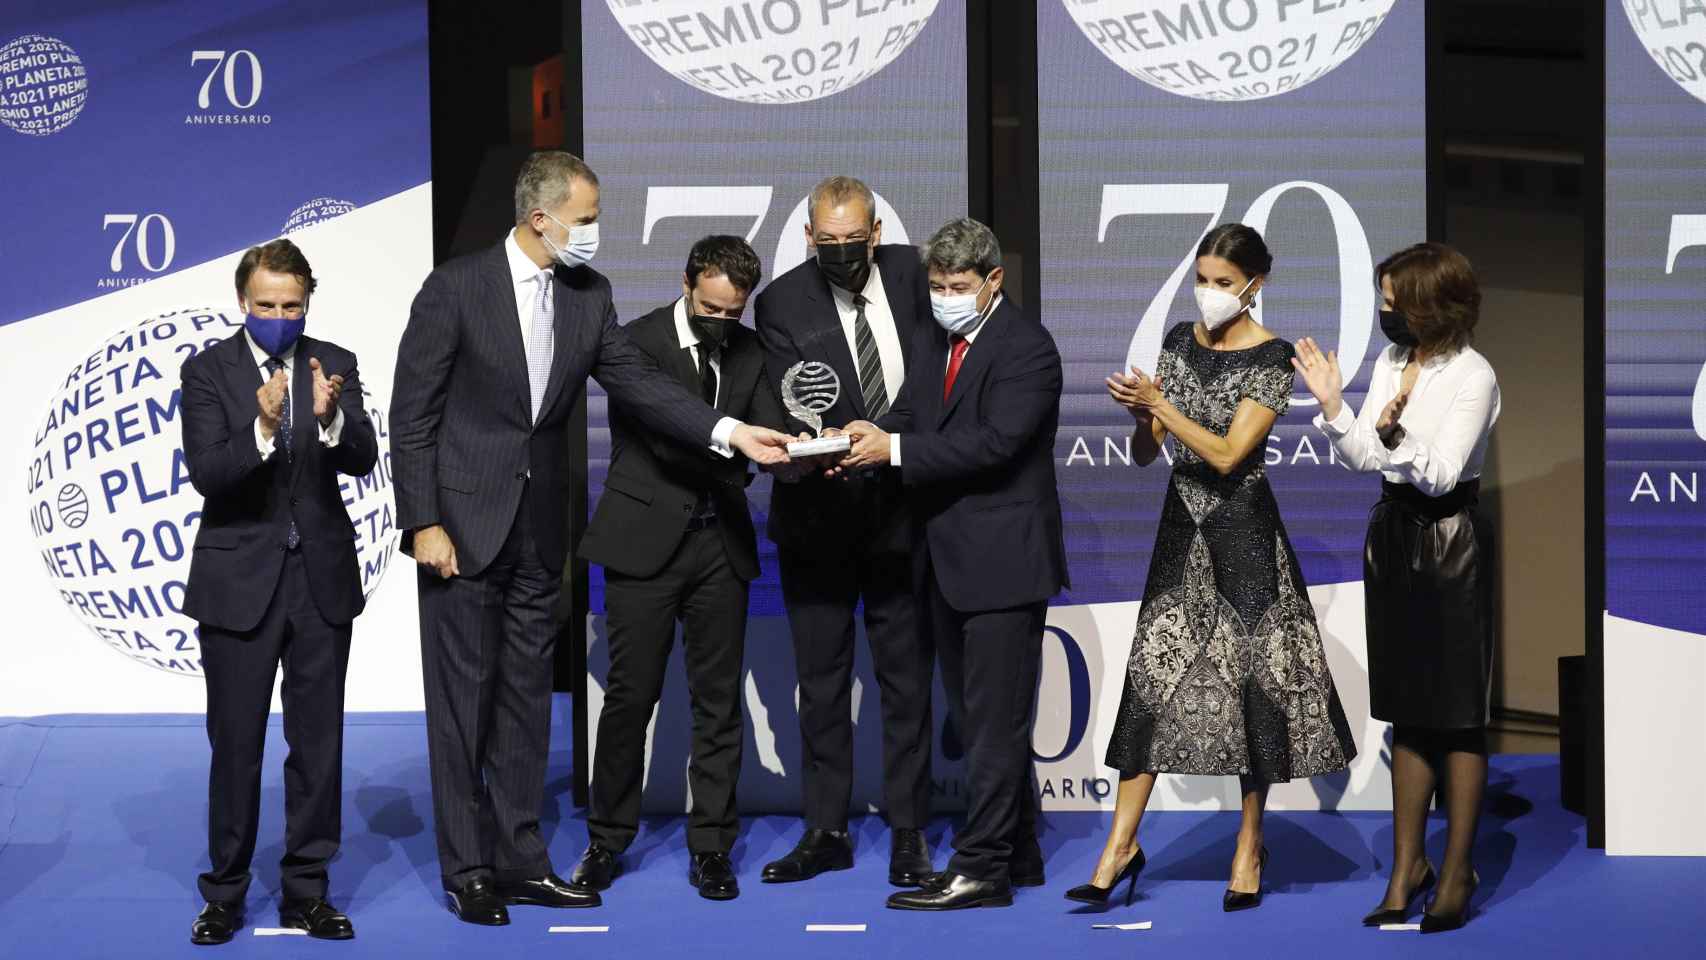 Los Reyes entregan el Premio Planeta a los escritores Jorge Díaz, Antonio Mercero y Agustín Martínez.